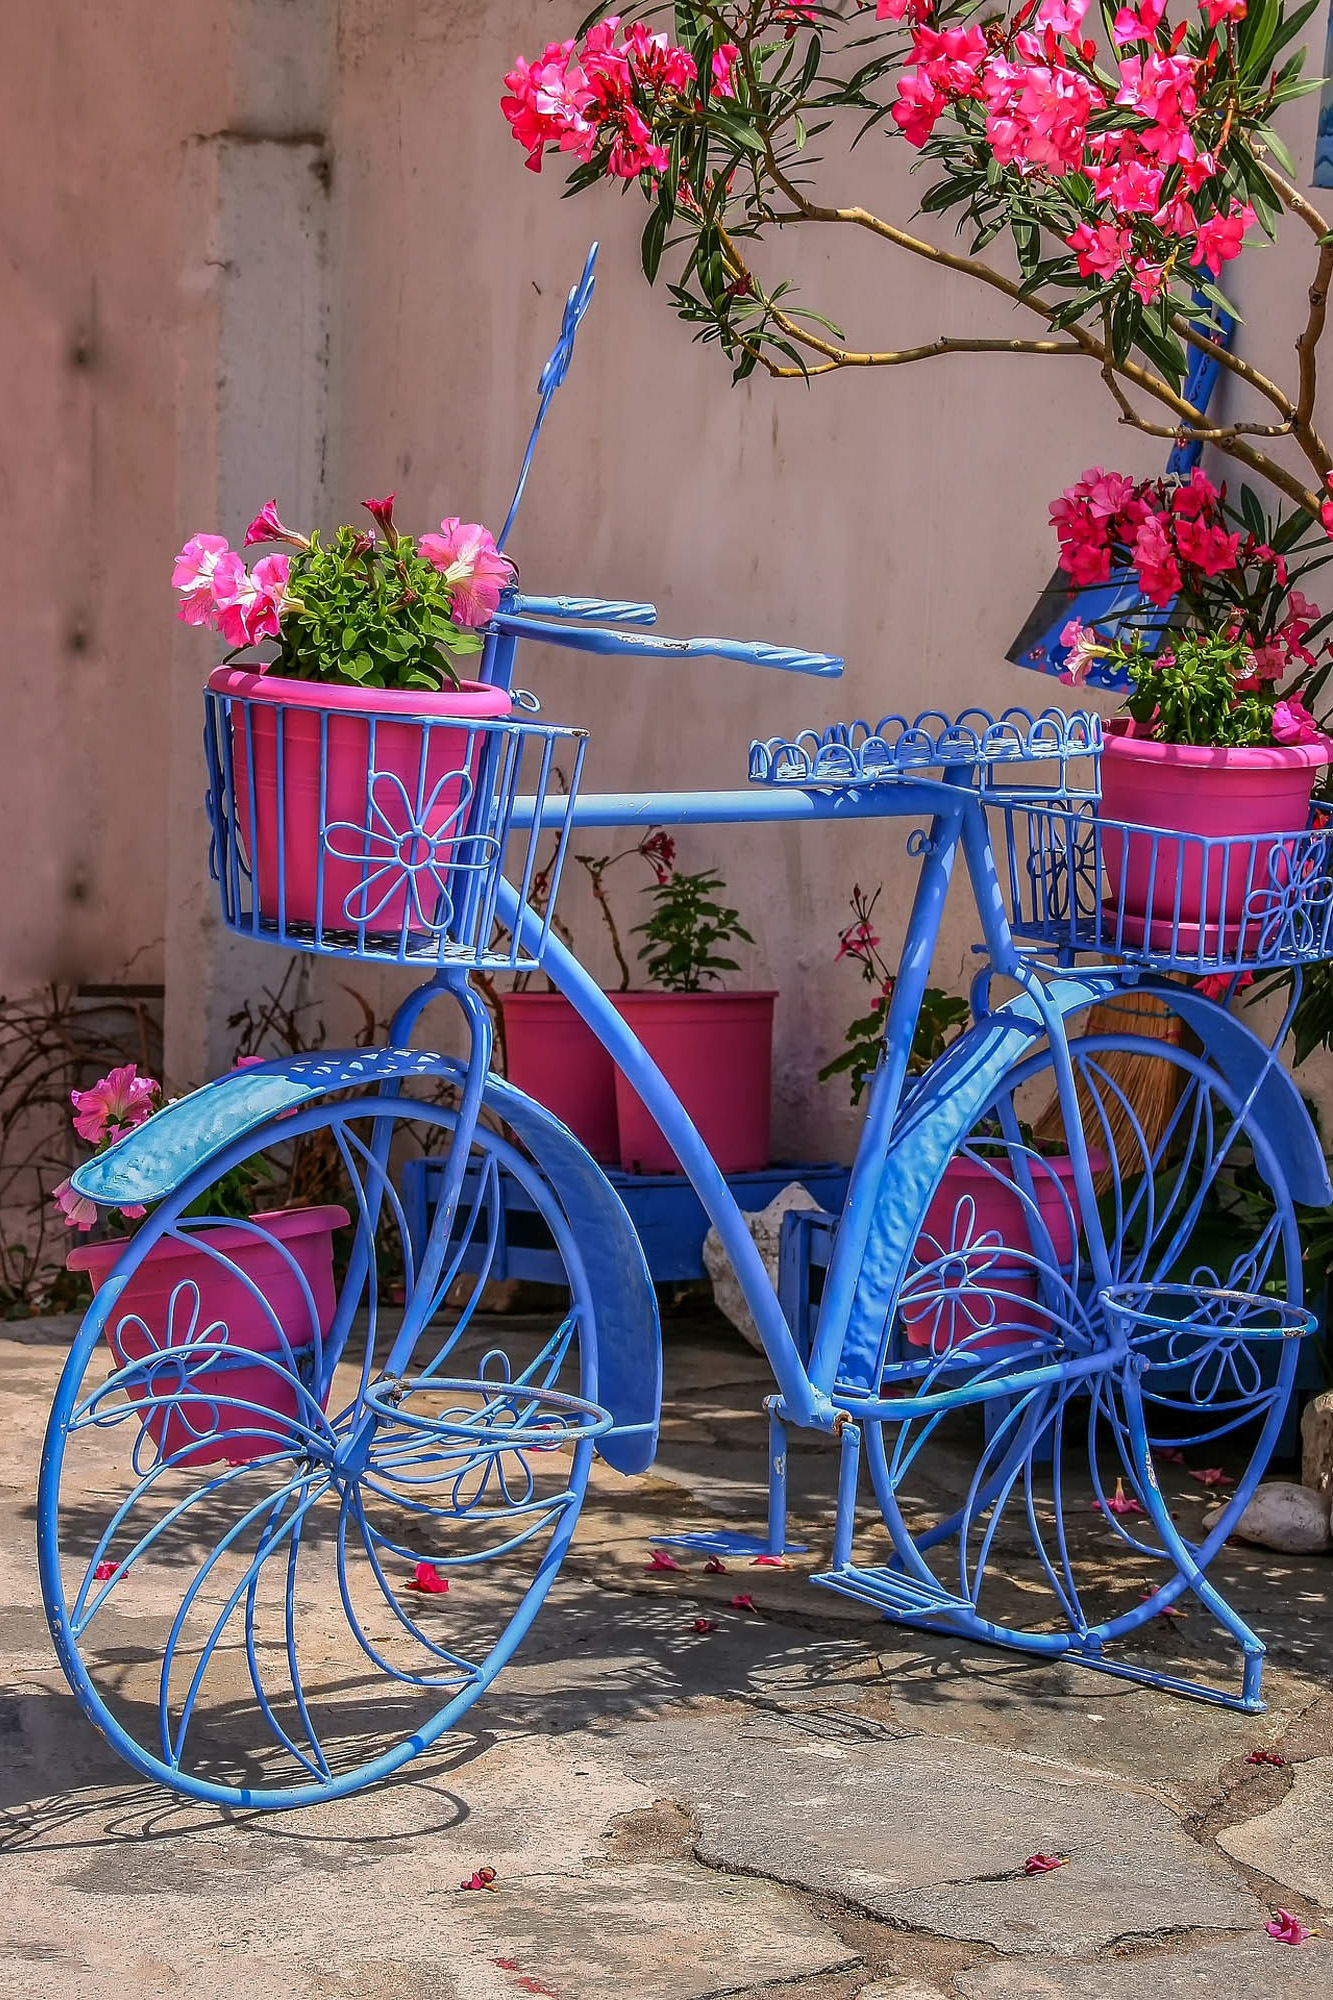 niebieski rower i różowe kwiaty, gdzieś w grecji, detal